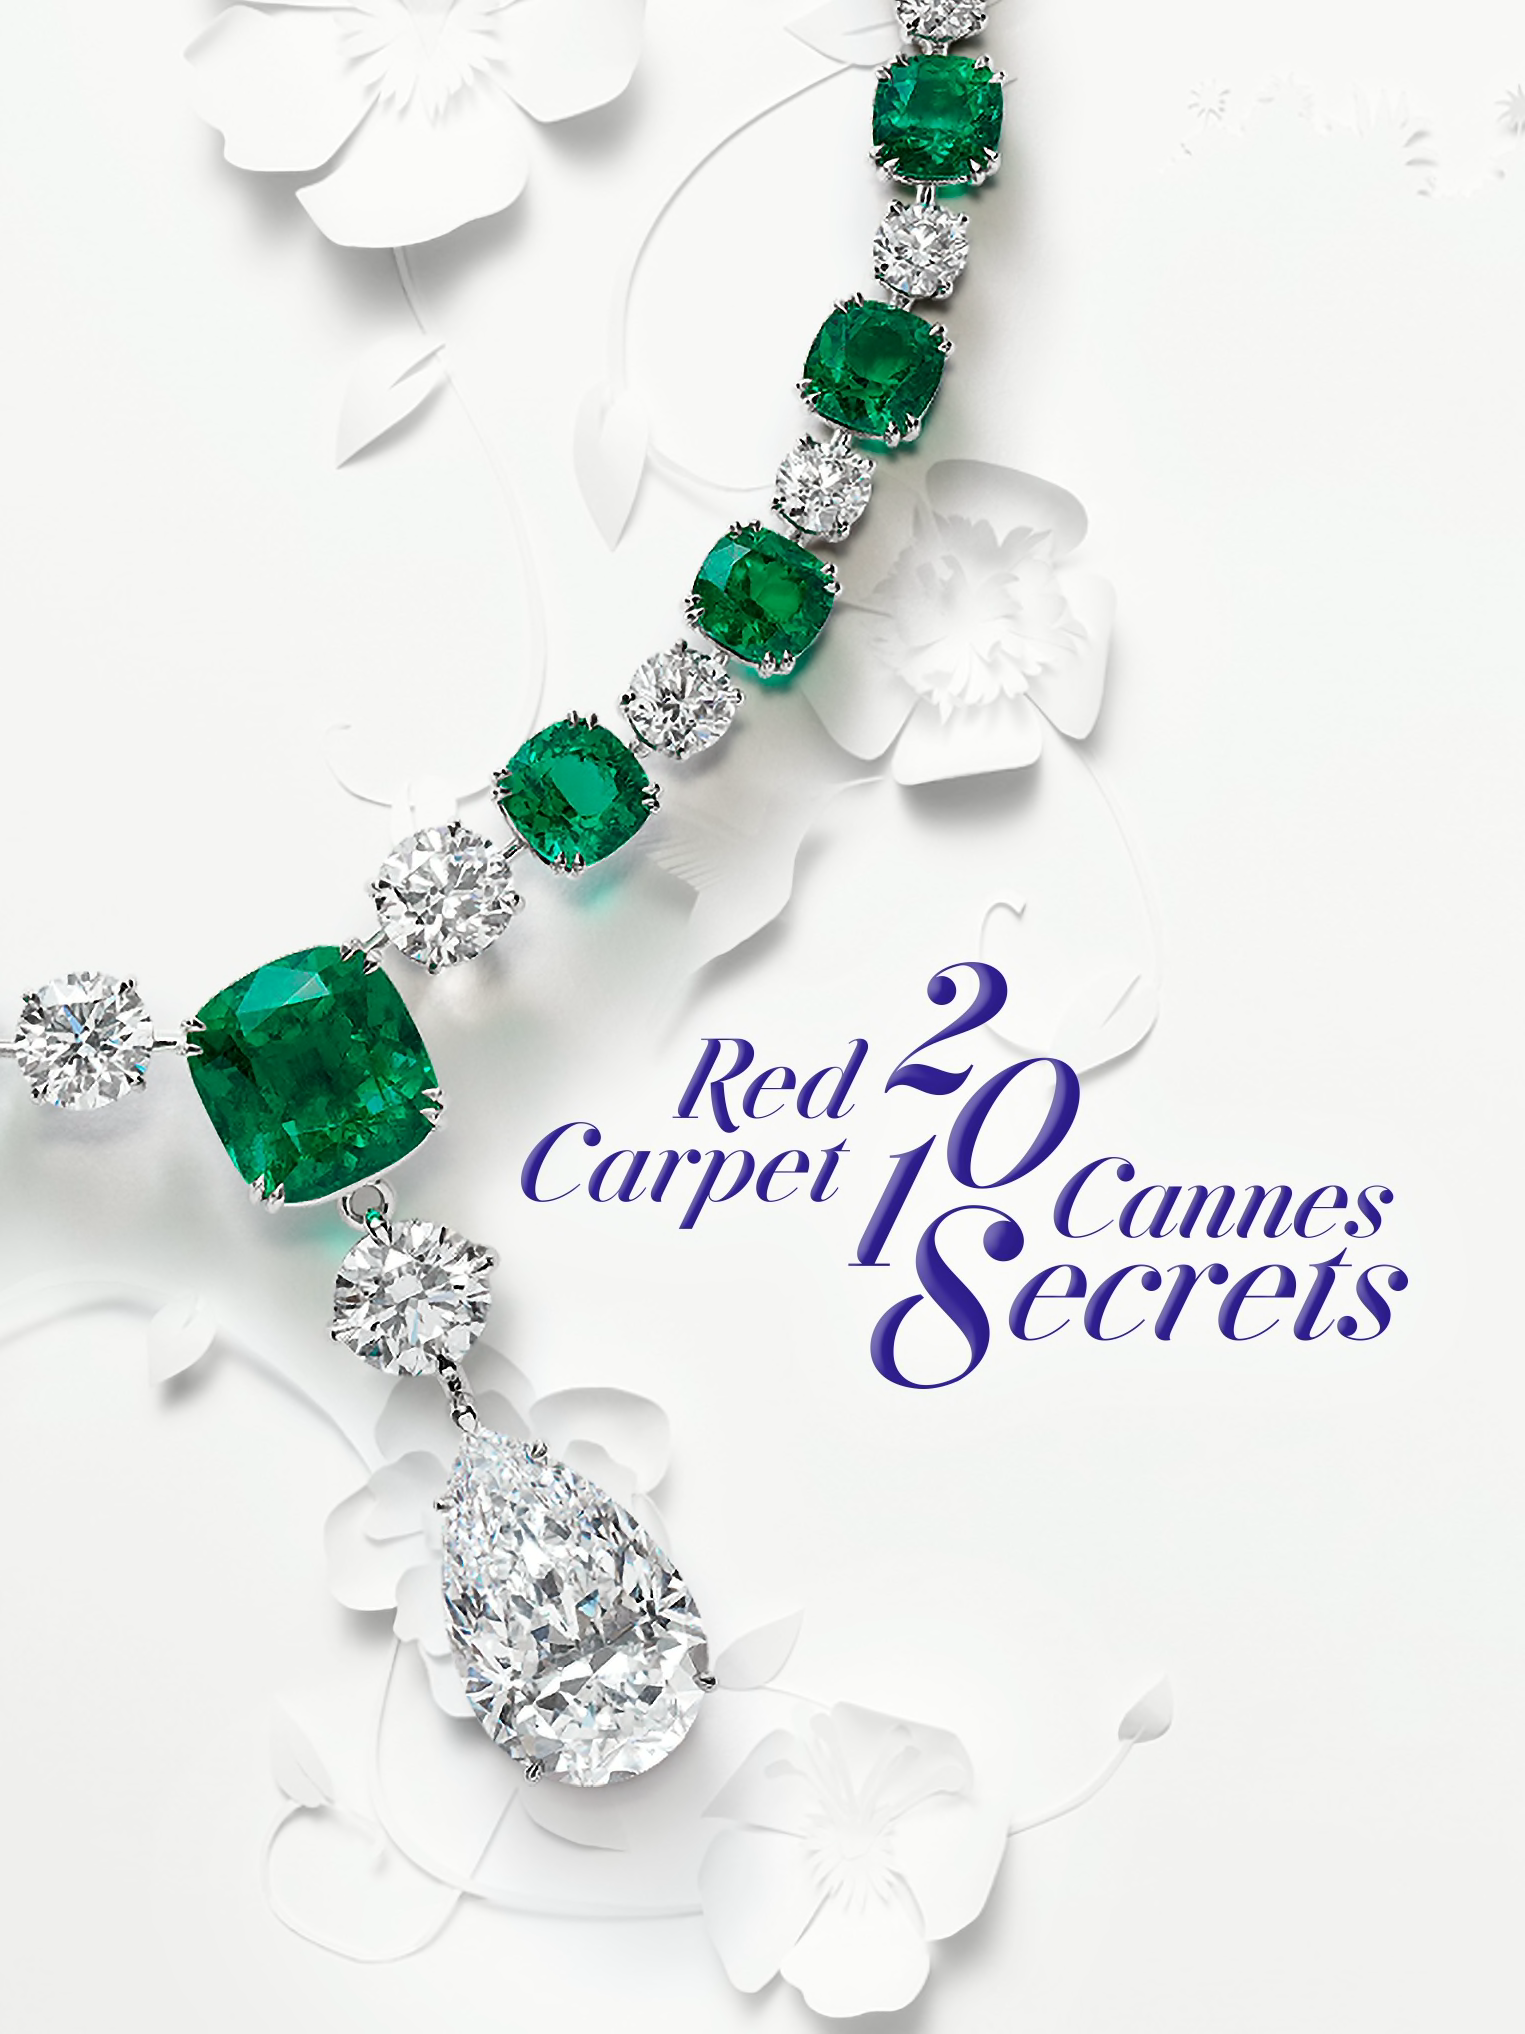 Cabecera de la Colección Red Carpet 2018